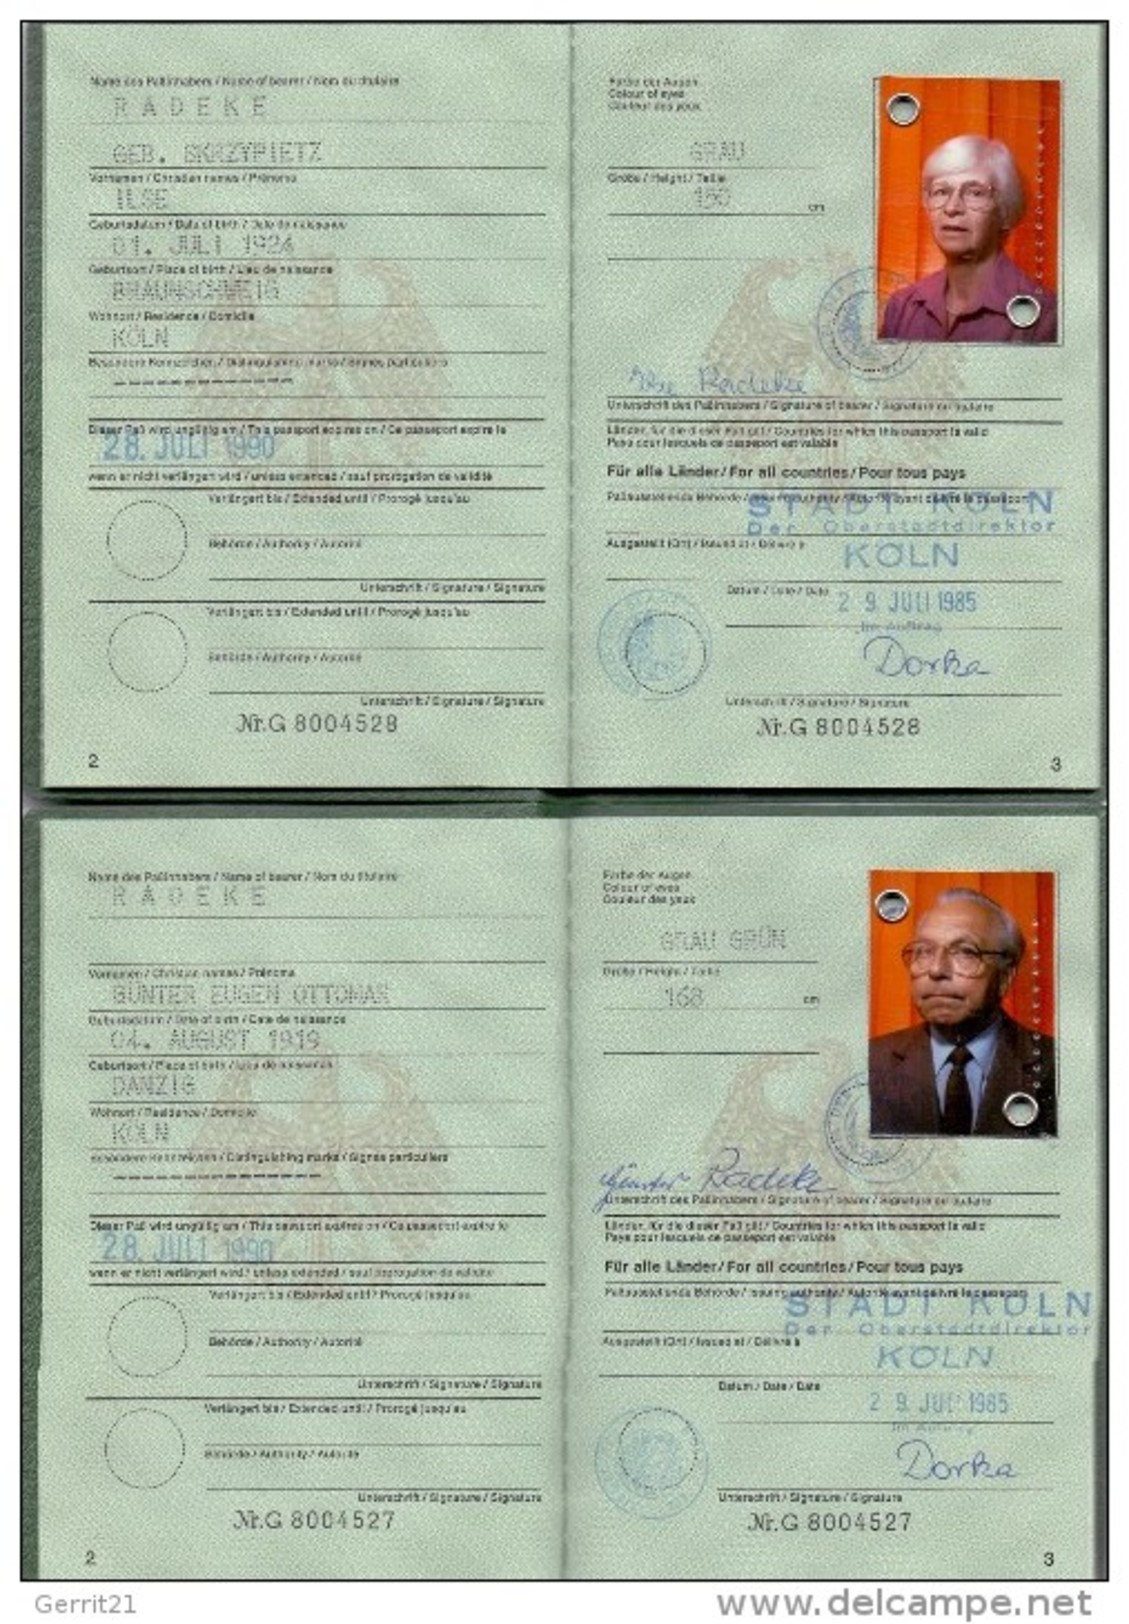 REISEPASS / PASSPORT - Deutschland, Ehepaar, DDR-Visa, Komplett, + Schwerbehindertenausweis 2003 - Historische Dokumente